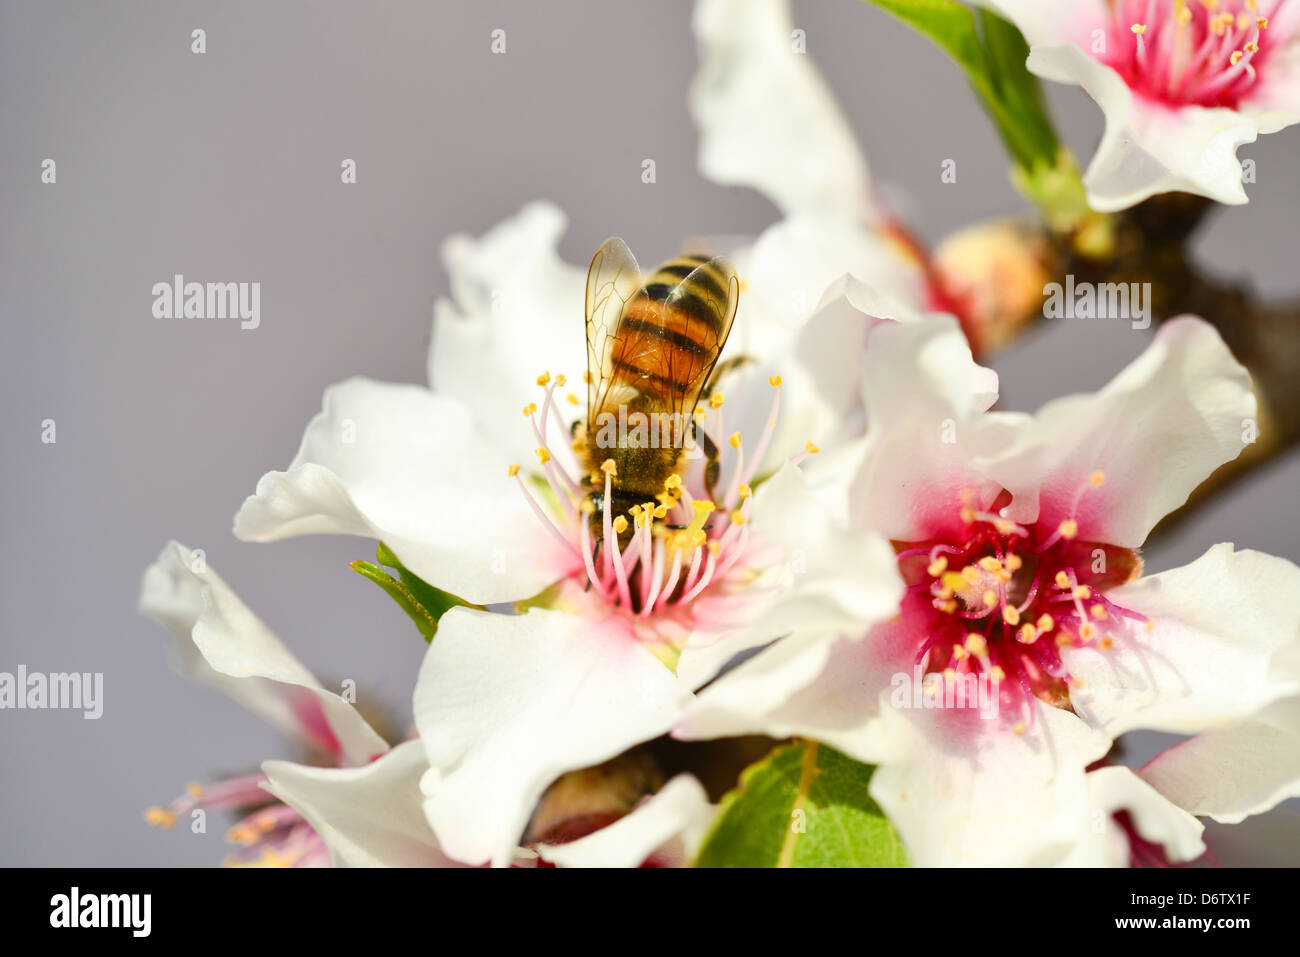 Au-dessus d'une abeille fleur d'amande Banque D'Images